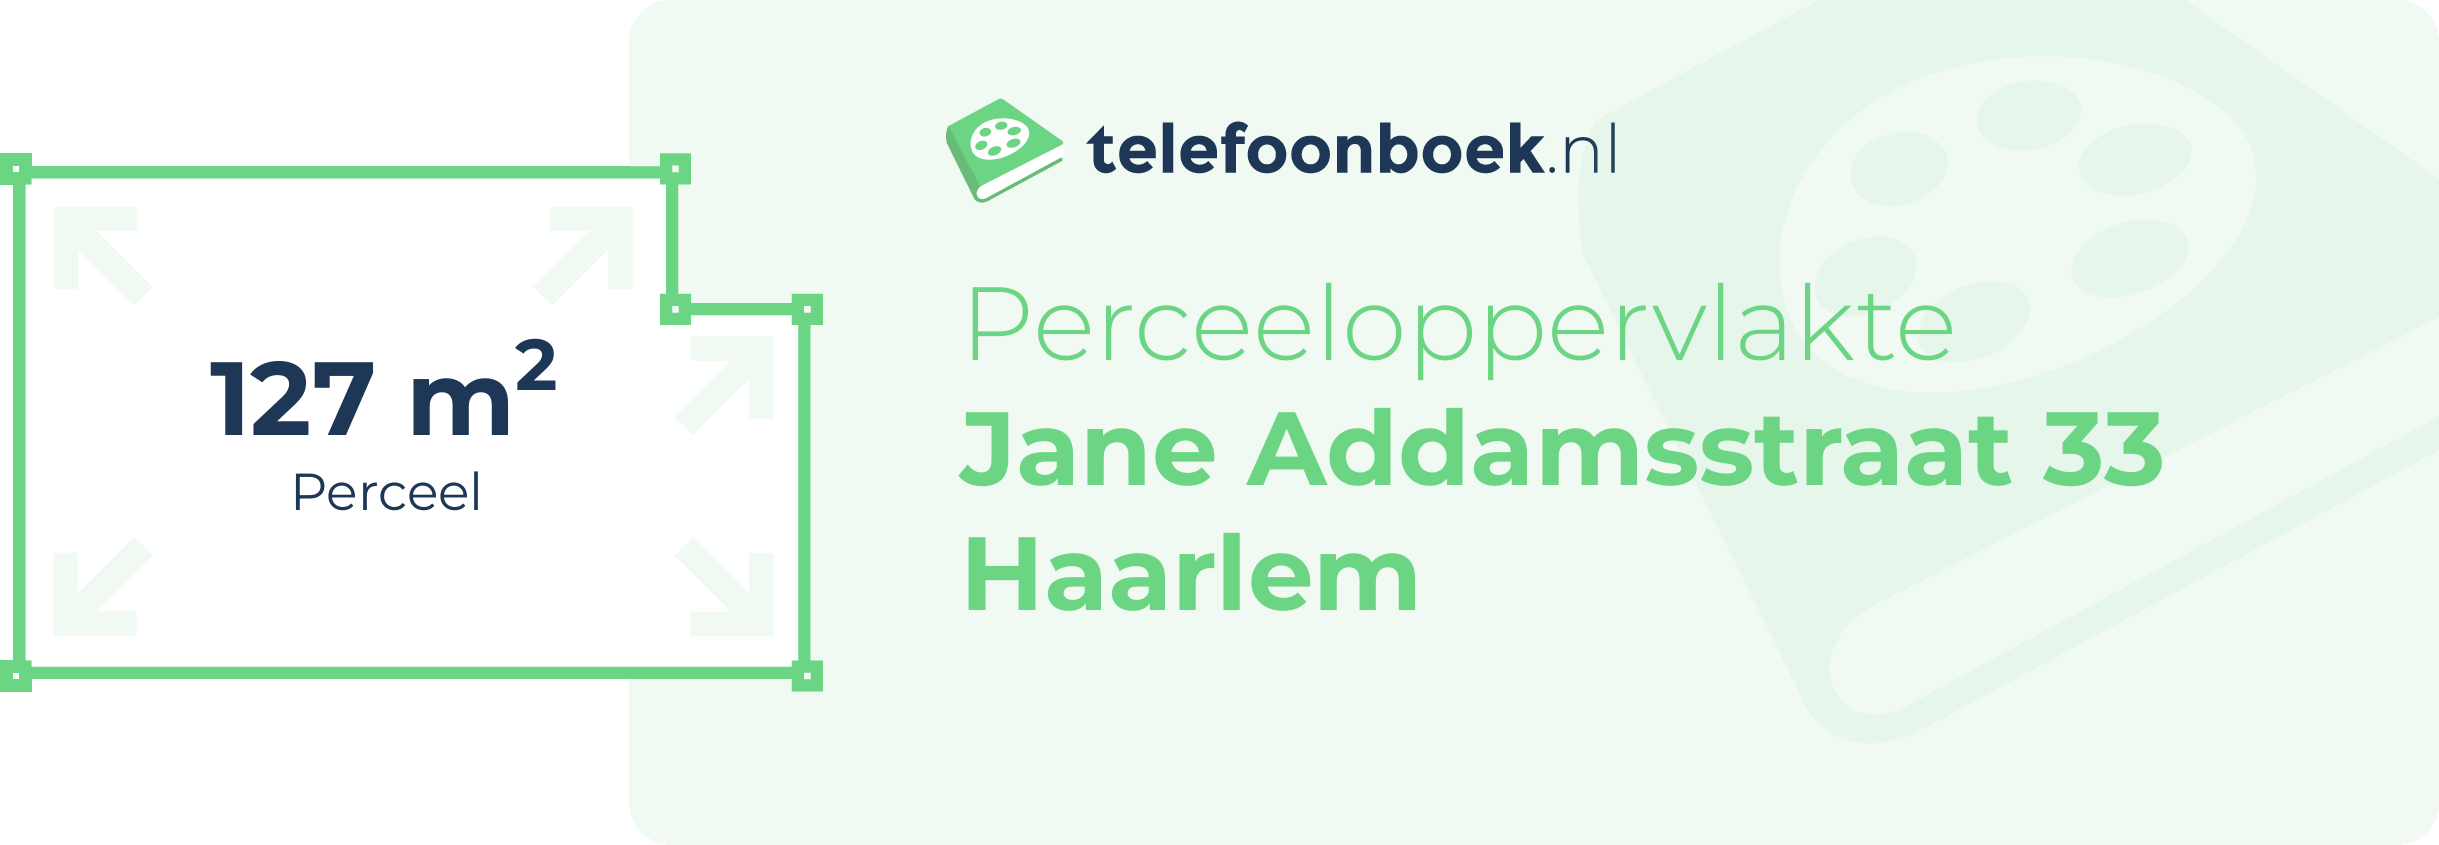 Perceeloppervlakte Jane Addamsstraat 33 Haarlem